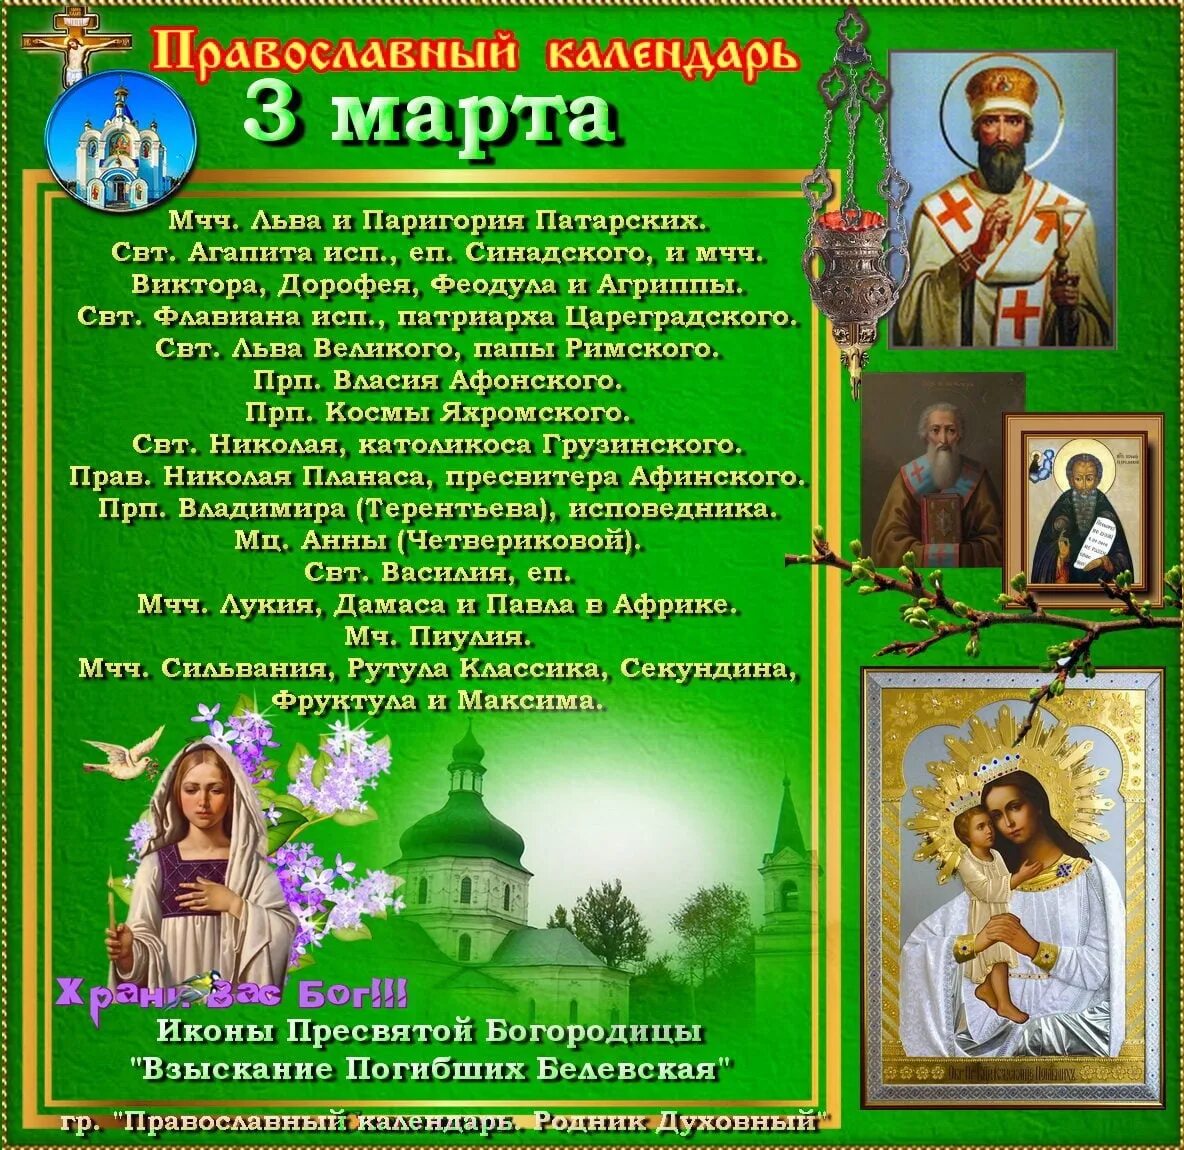 5 апреля православный календарь. Православный календарь на март.